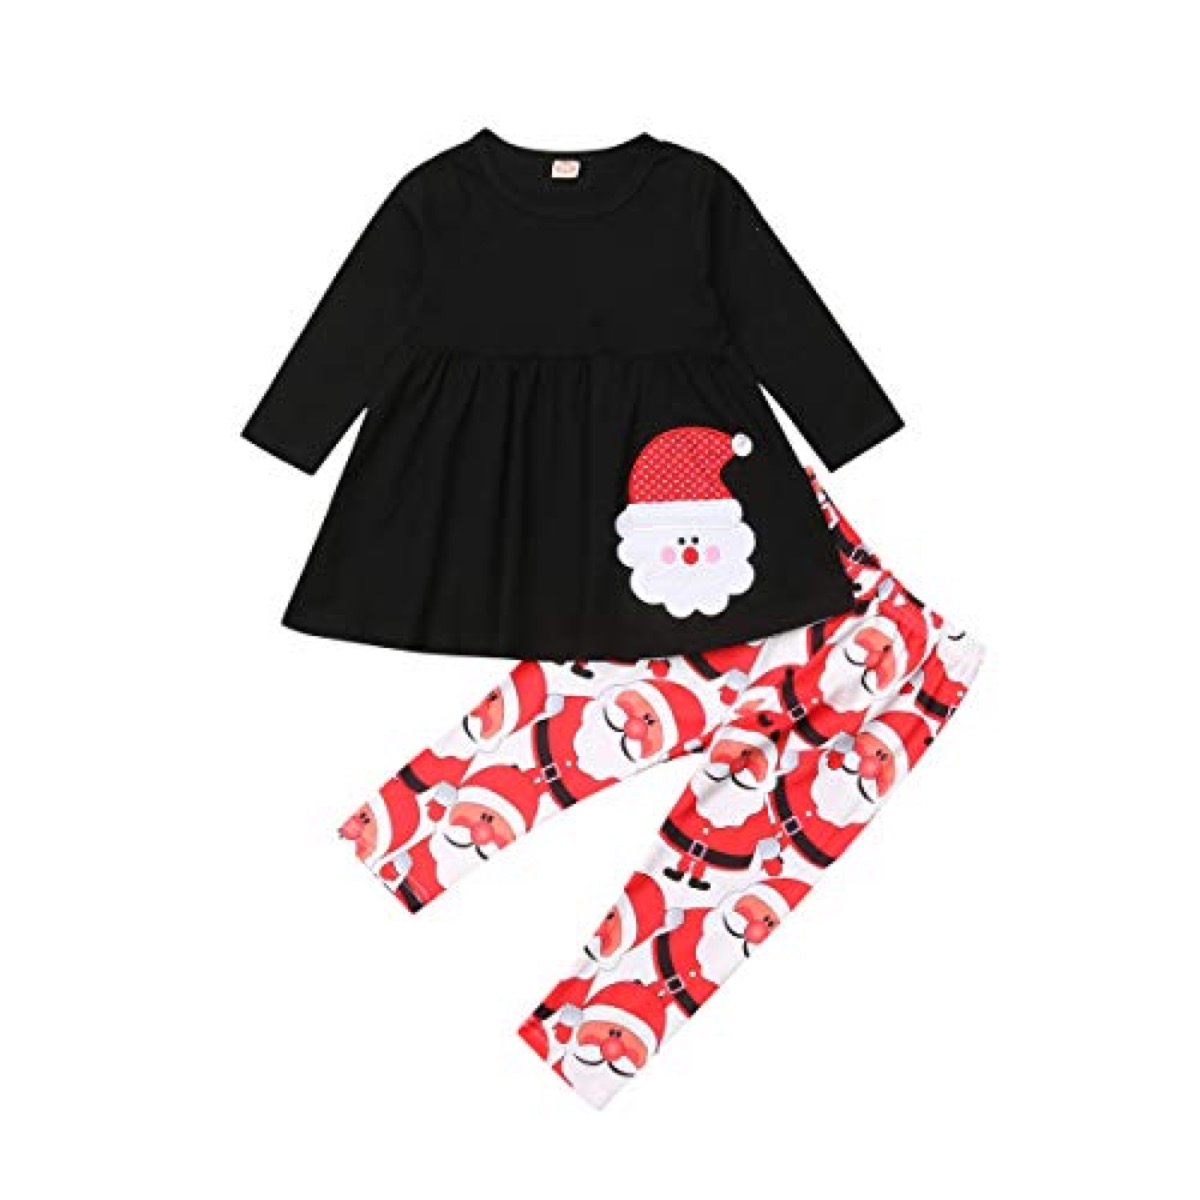 black top with santa and santa leggings